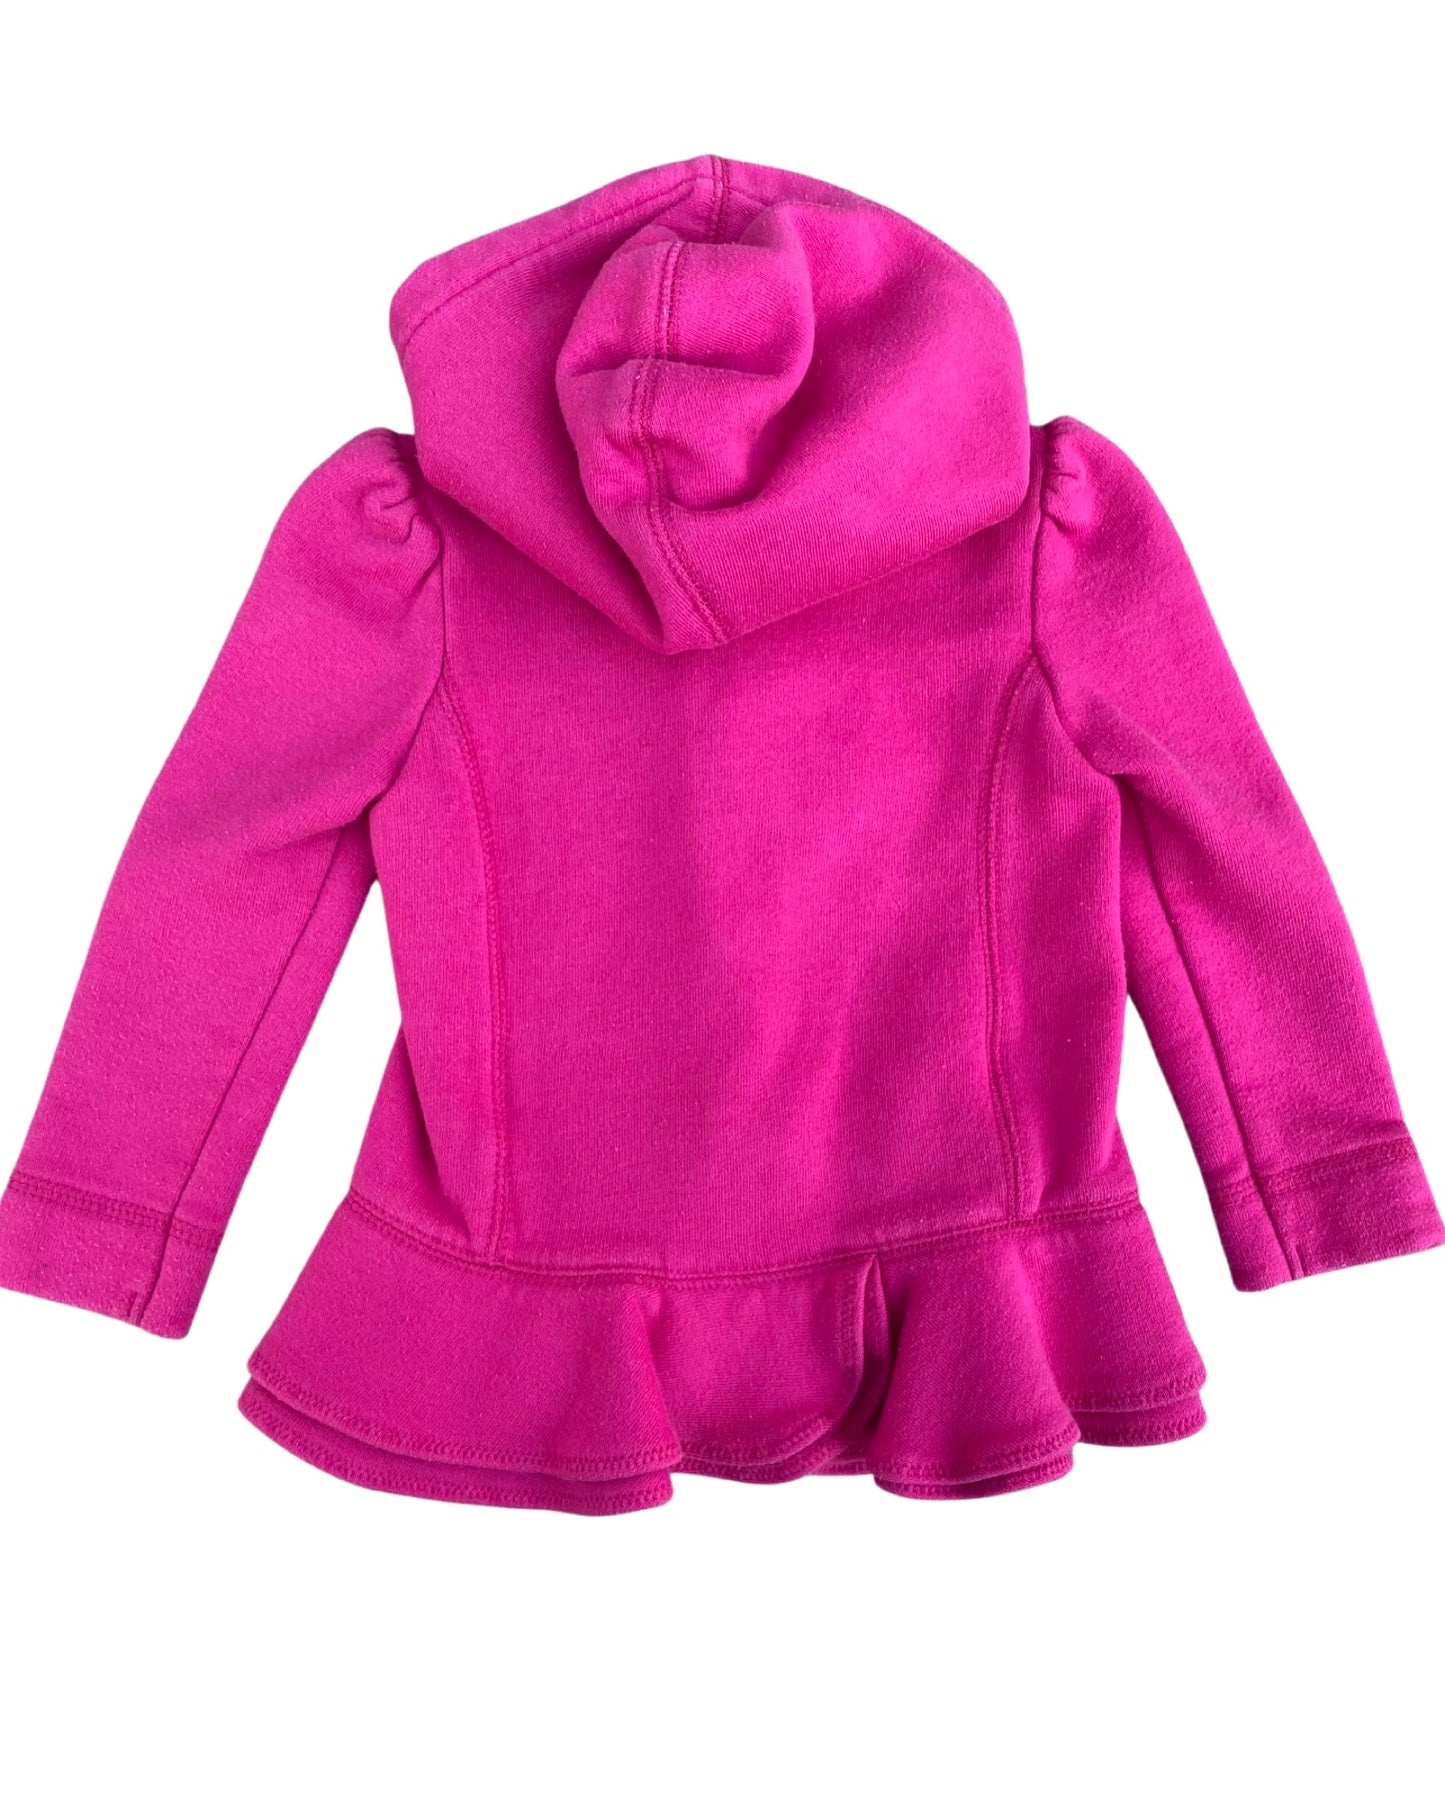 Ralph Lauren hot pink zipped hoodie with peplum hem (9-12mths)